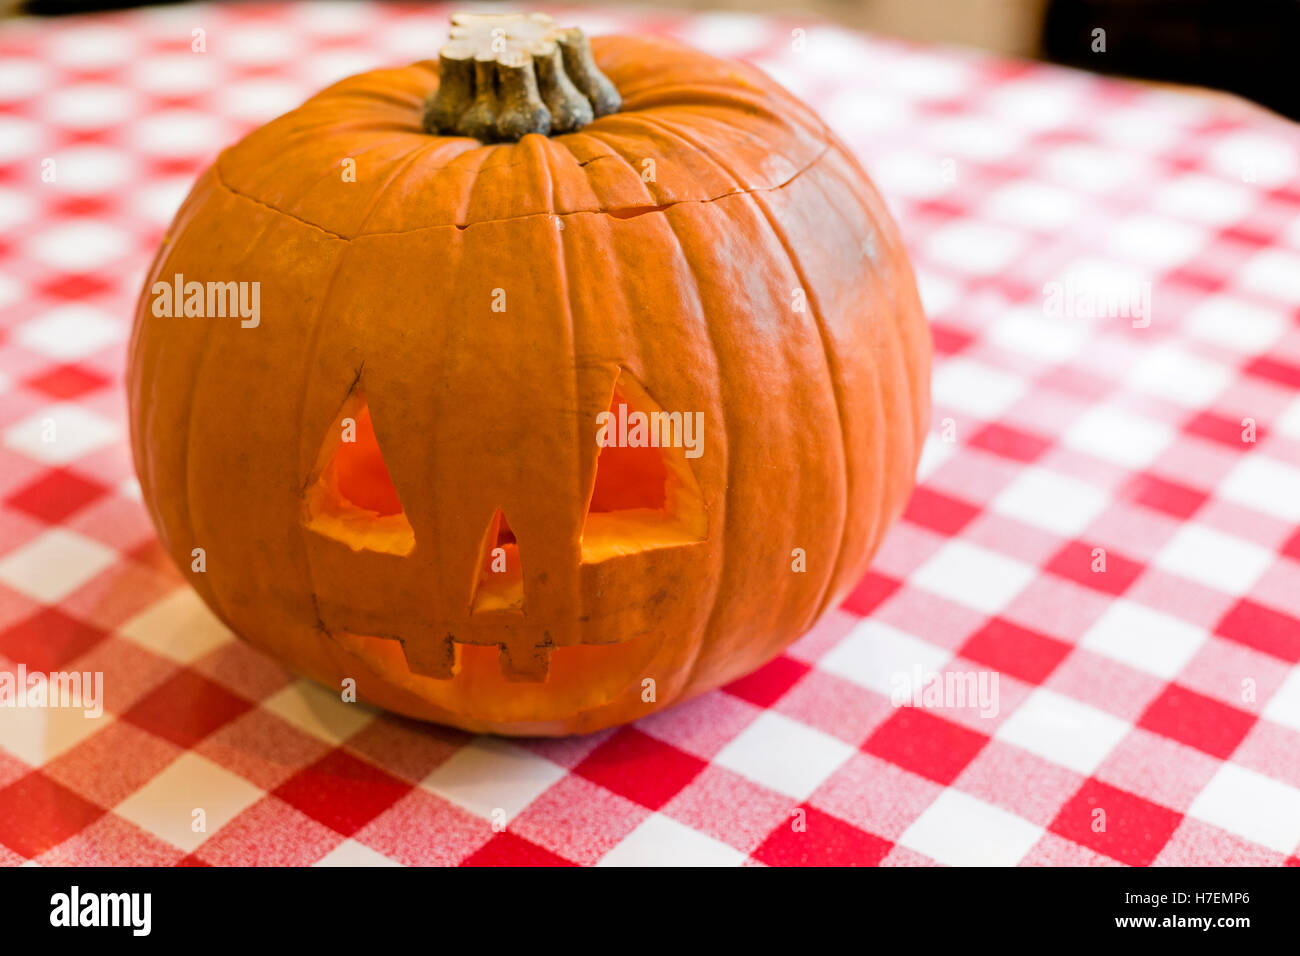 Geschnitzten Halloween Kürbis am Küchentisch Model Release: Nein Property Release: Nein. Stockfoto